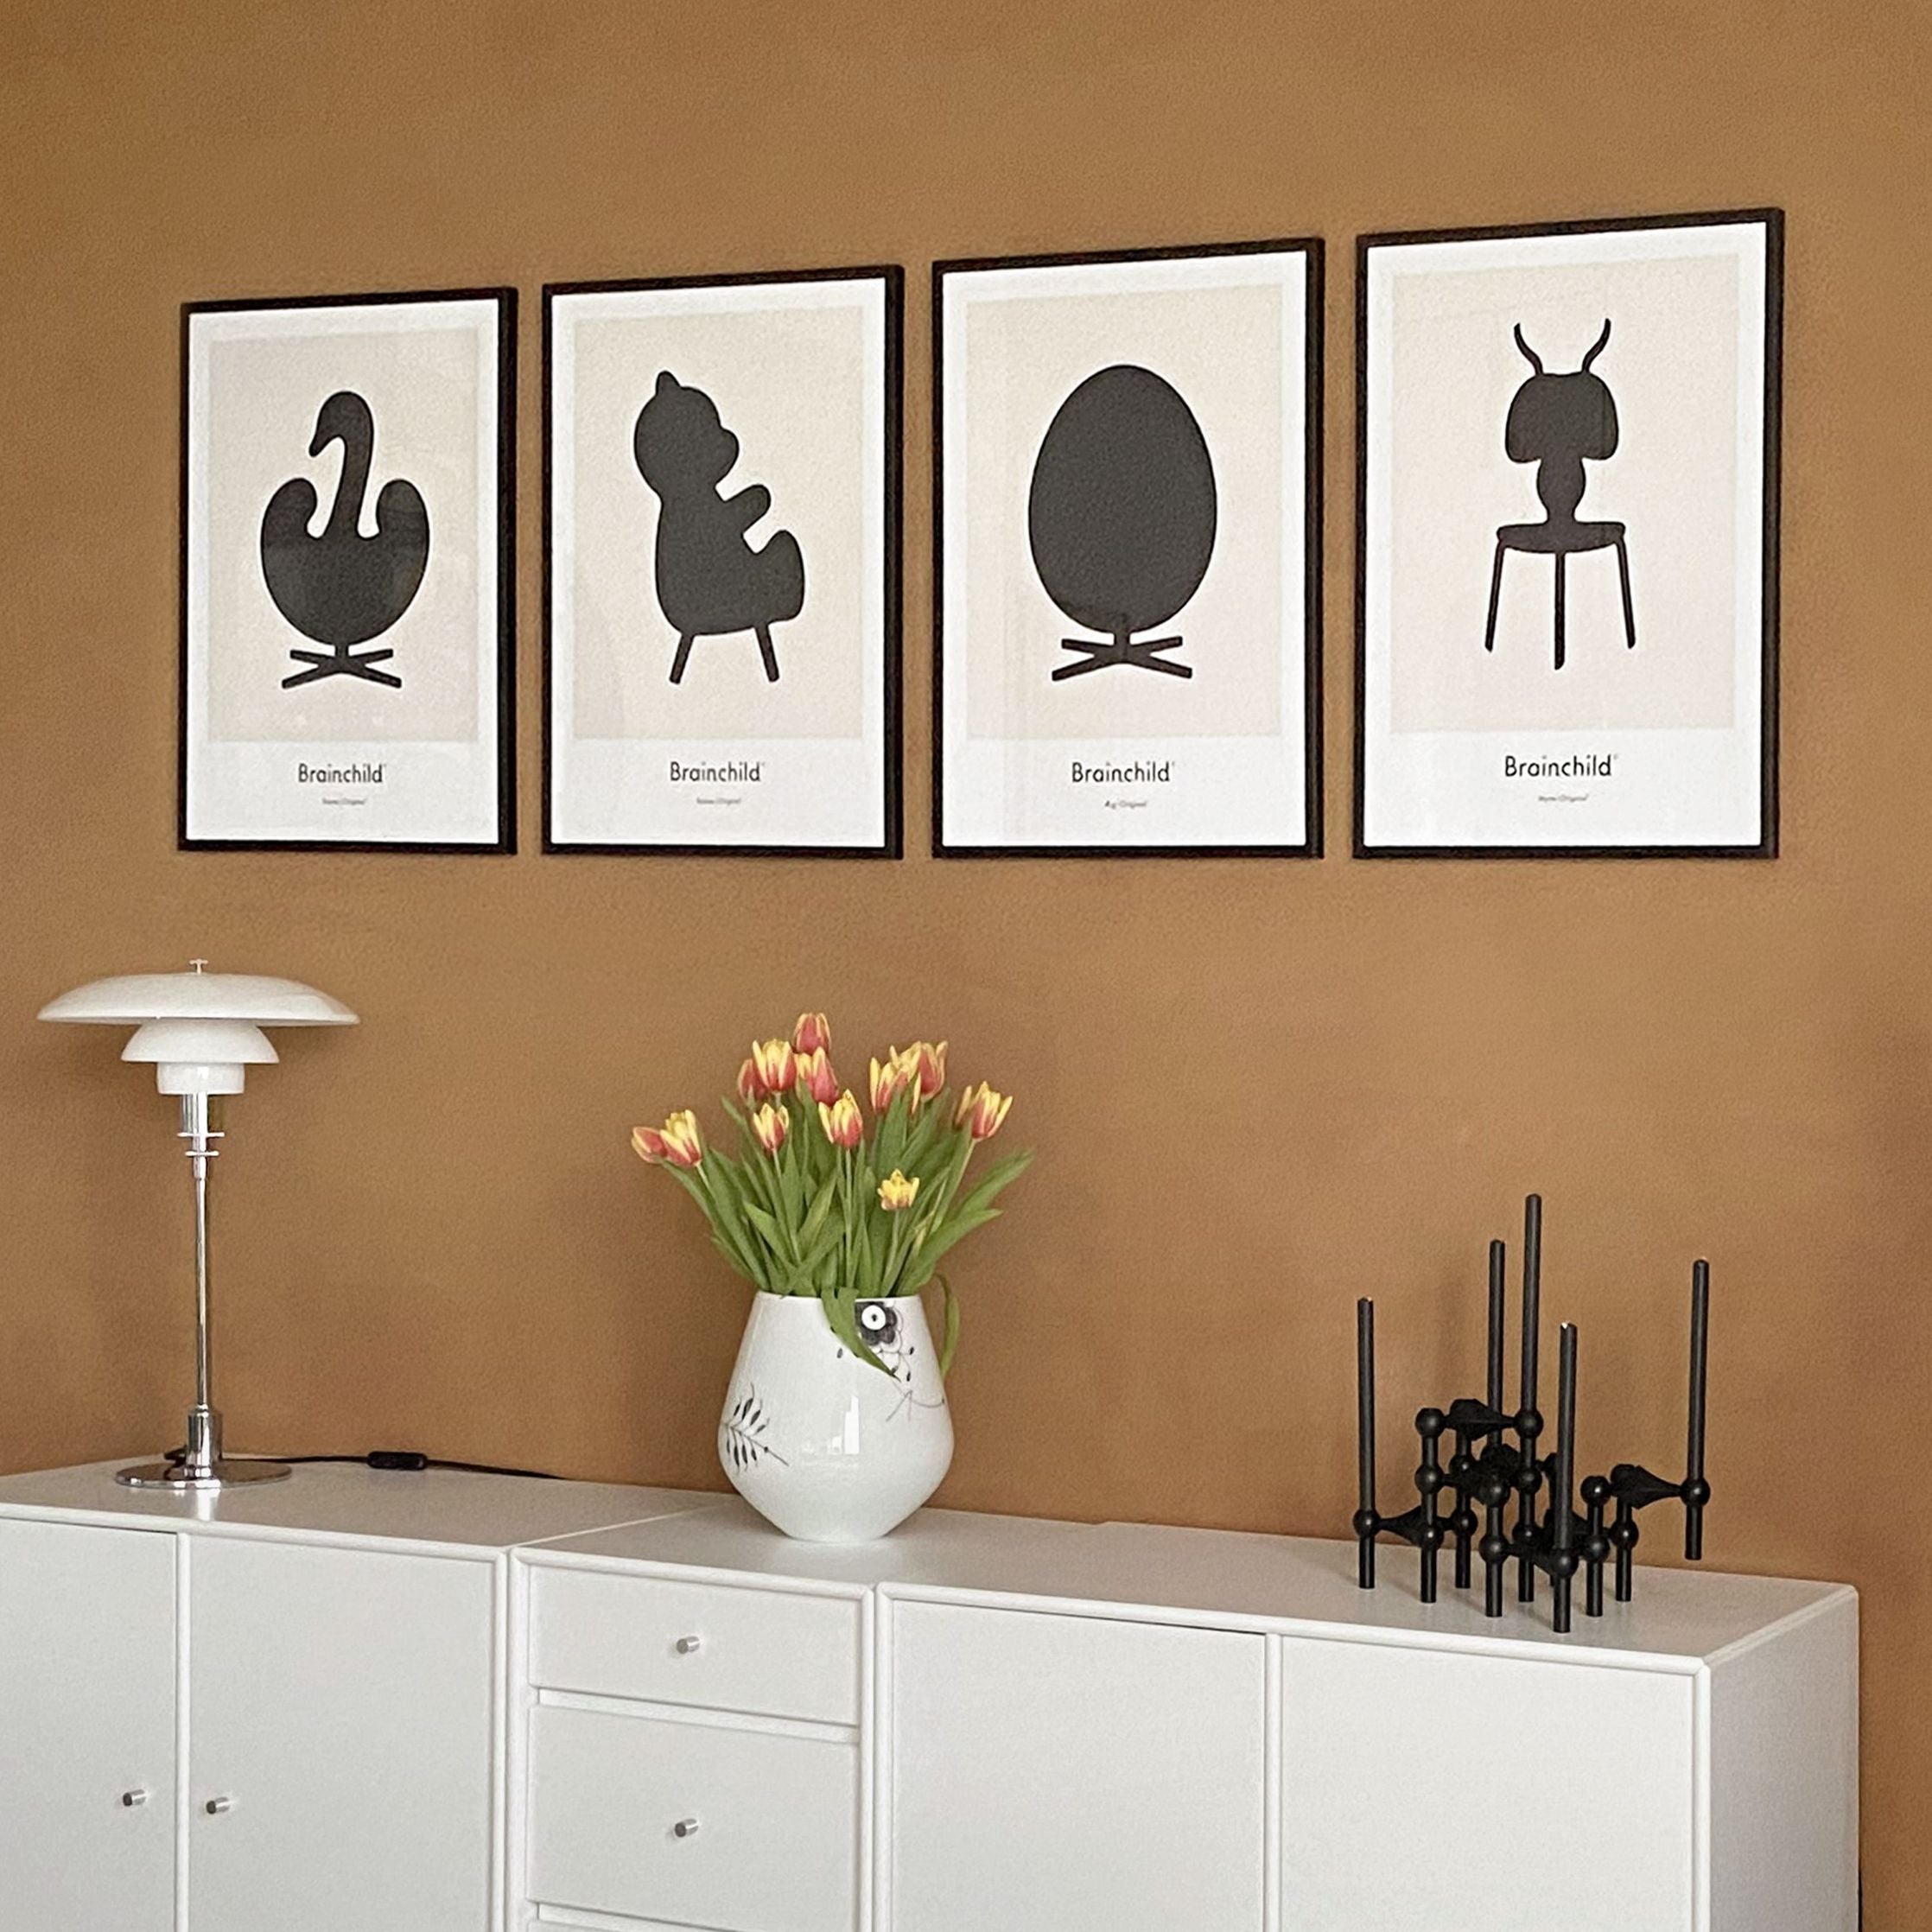 Brainchild Ant Design Icon -plakat, ramme laget av lys tre 50x70 cm, grå